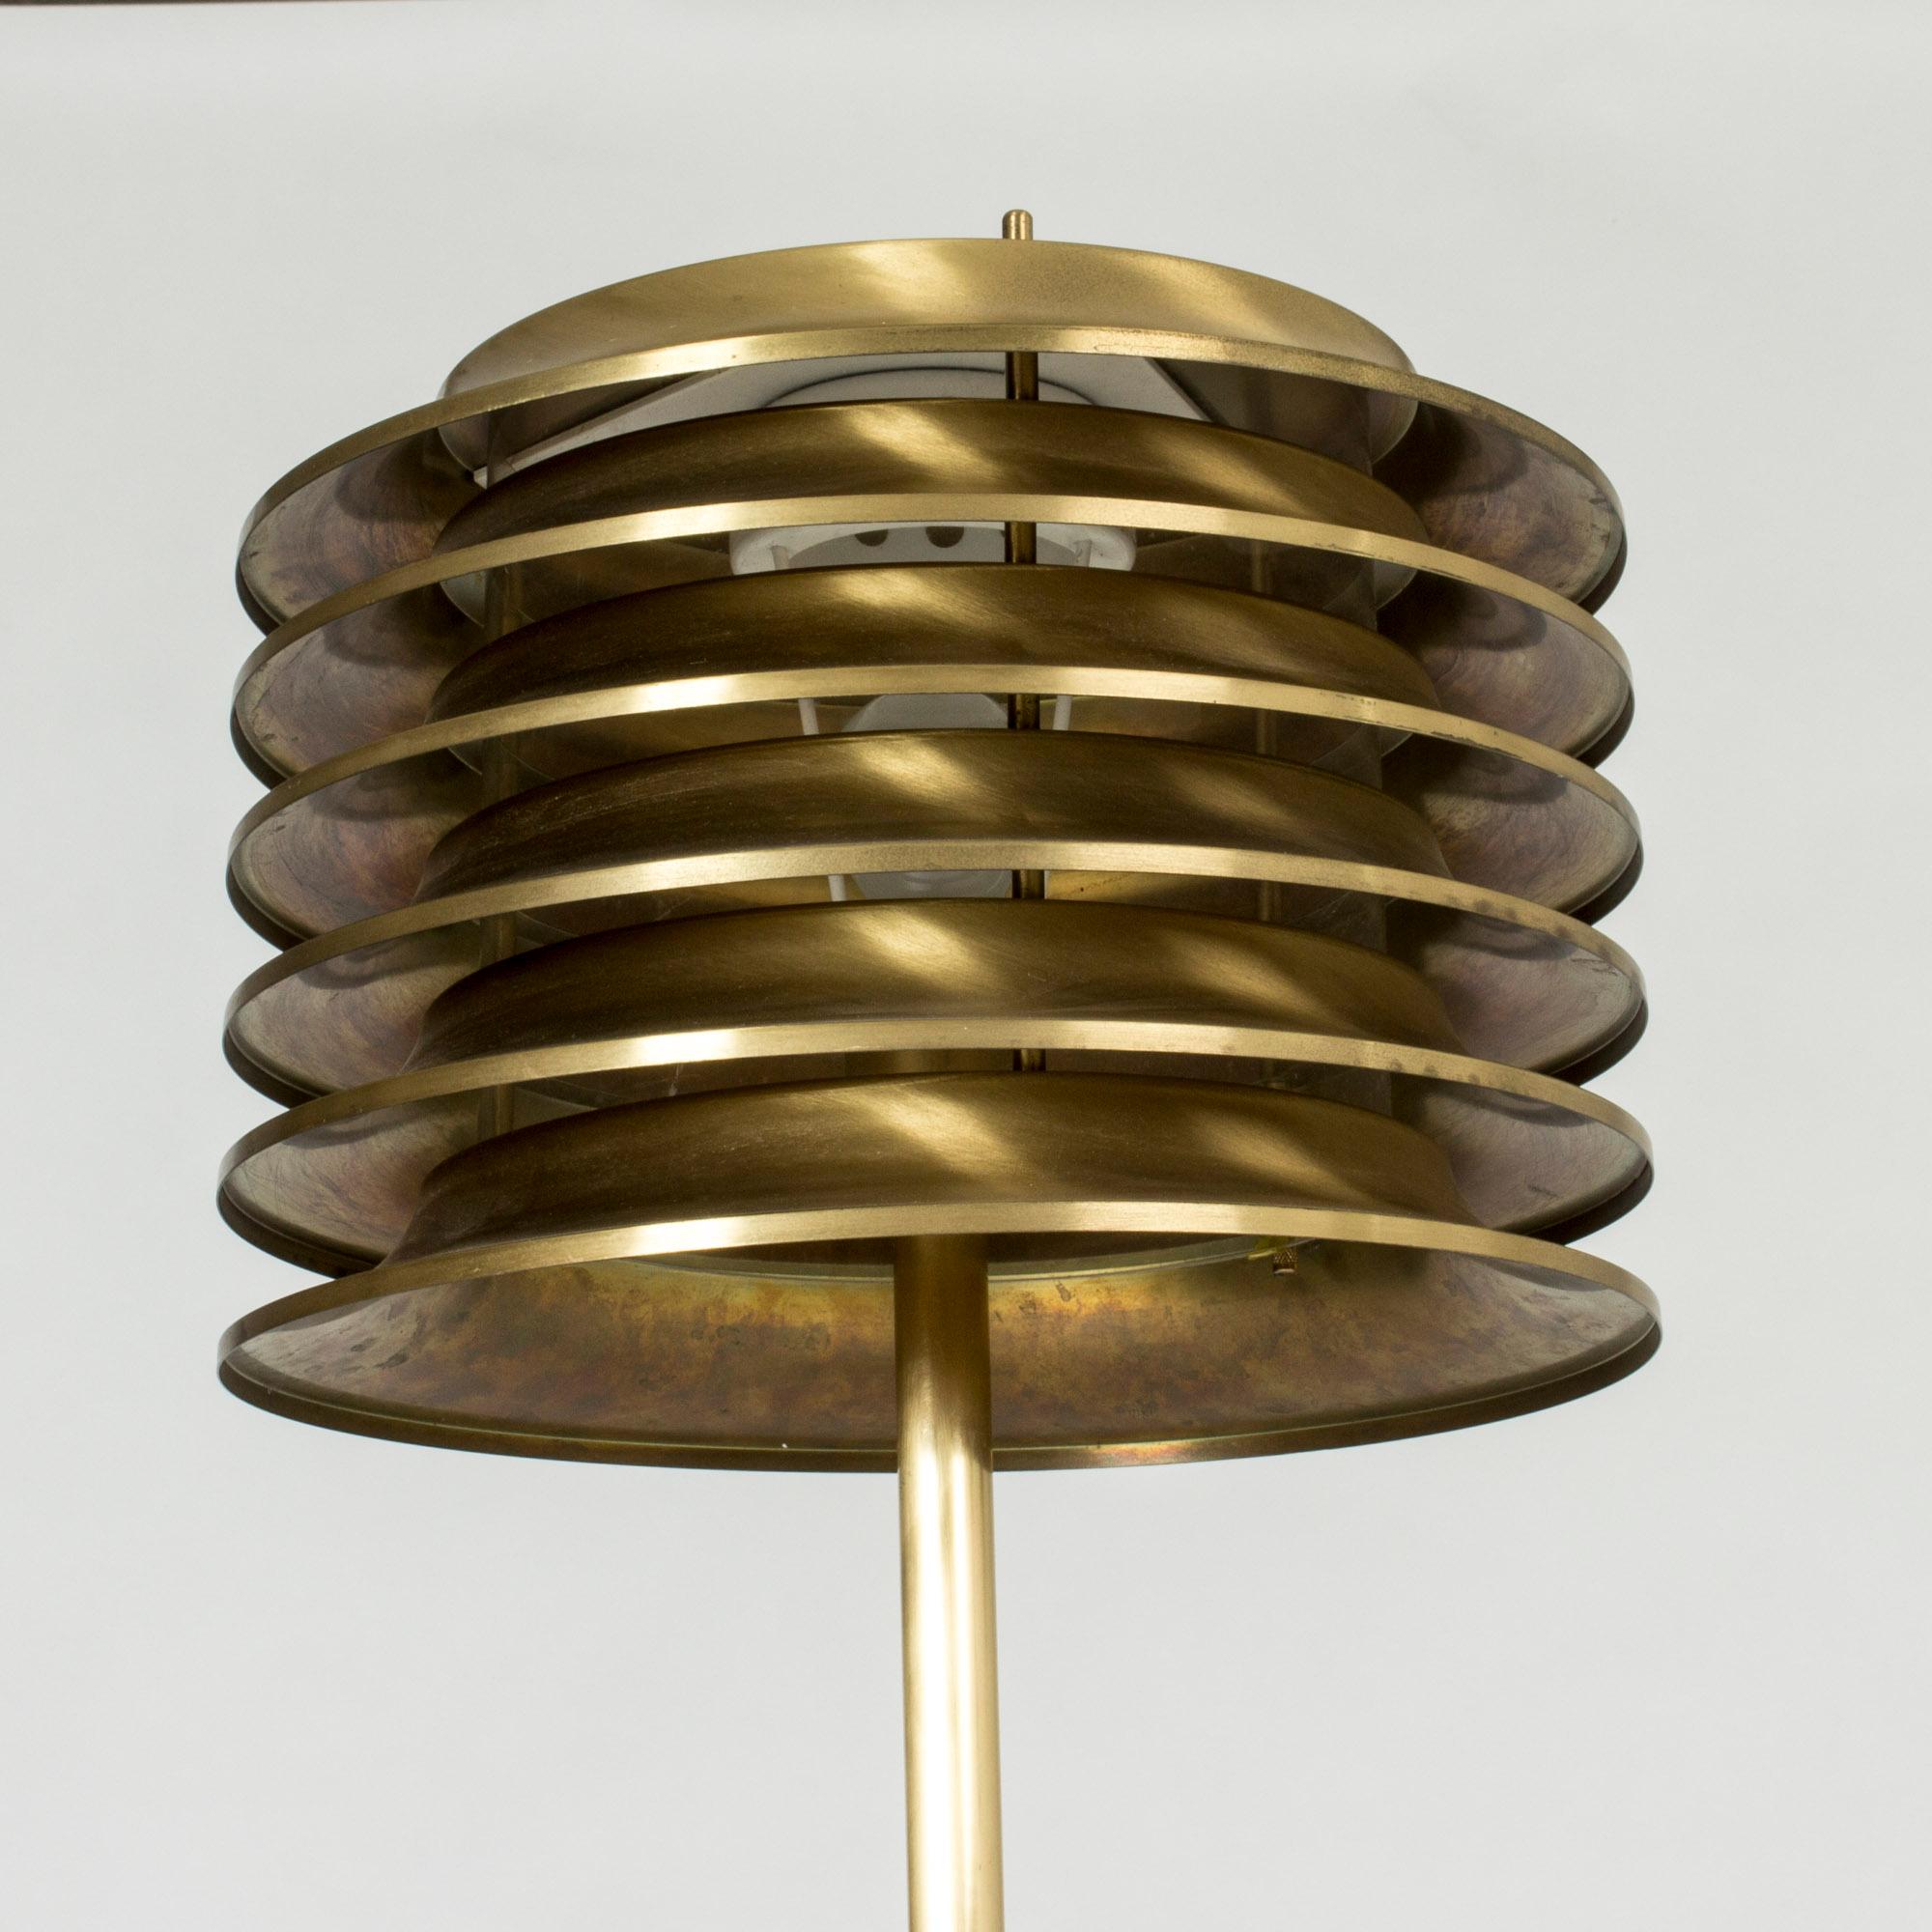 Late 20th Century Finnish Brass Floor Lamp by Kai Ruokonen for Orno, 1970s